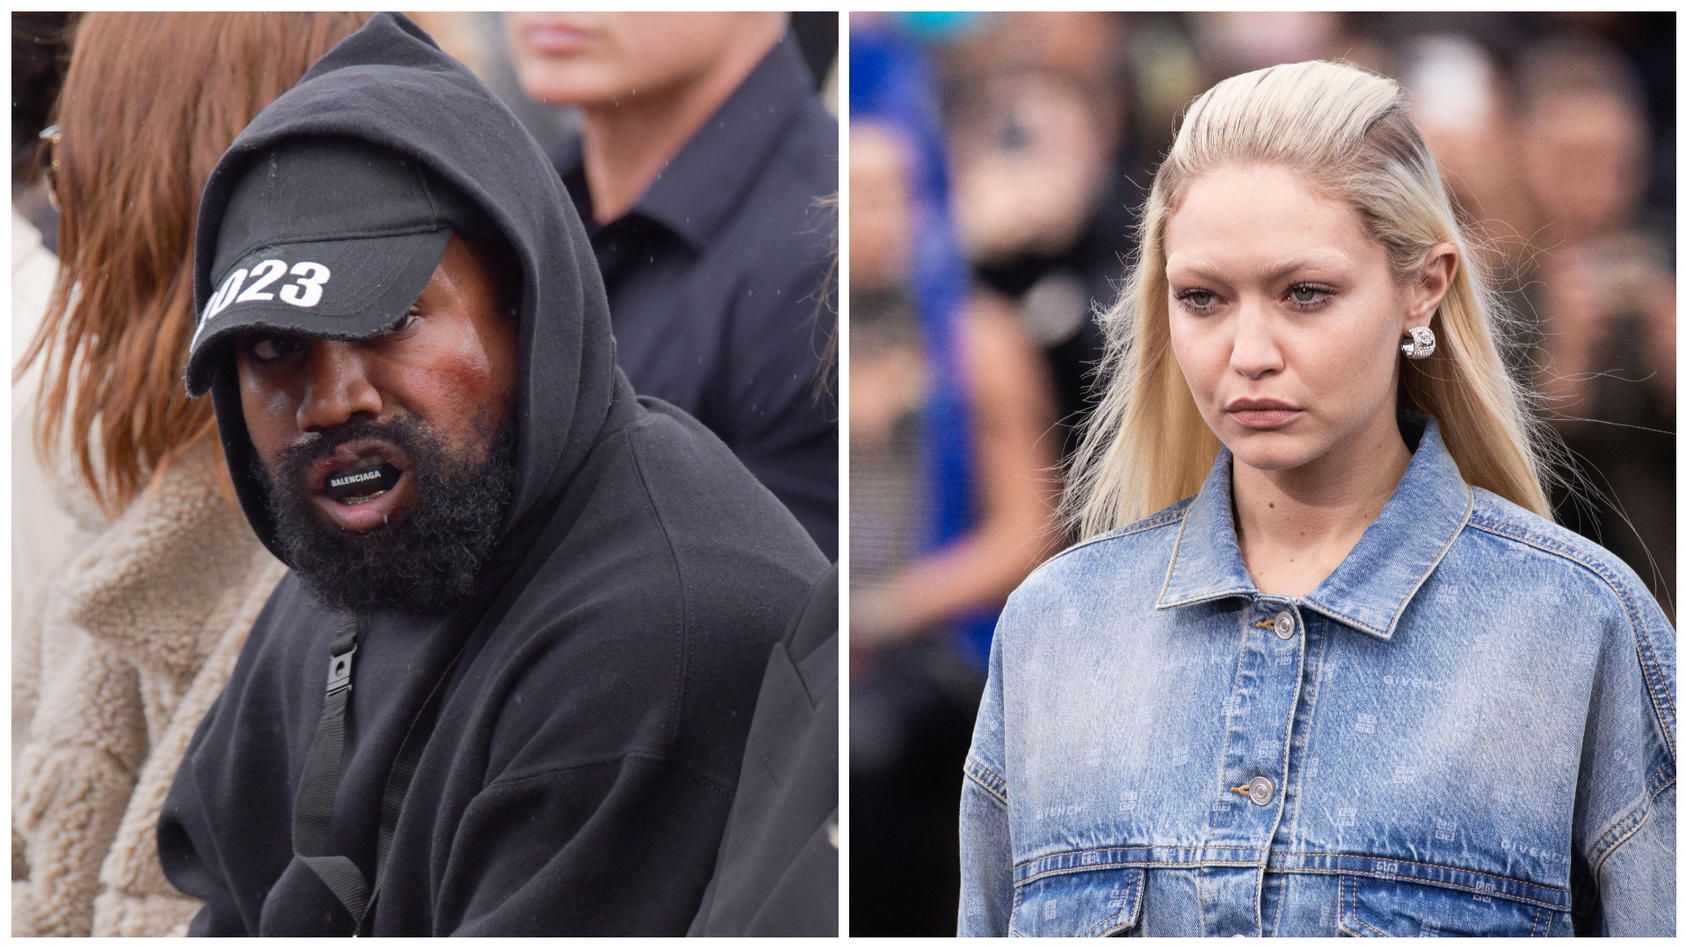 Rapper Kanye West und Model Gigi Hadid liegen im Clinch